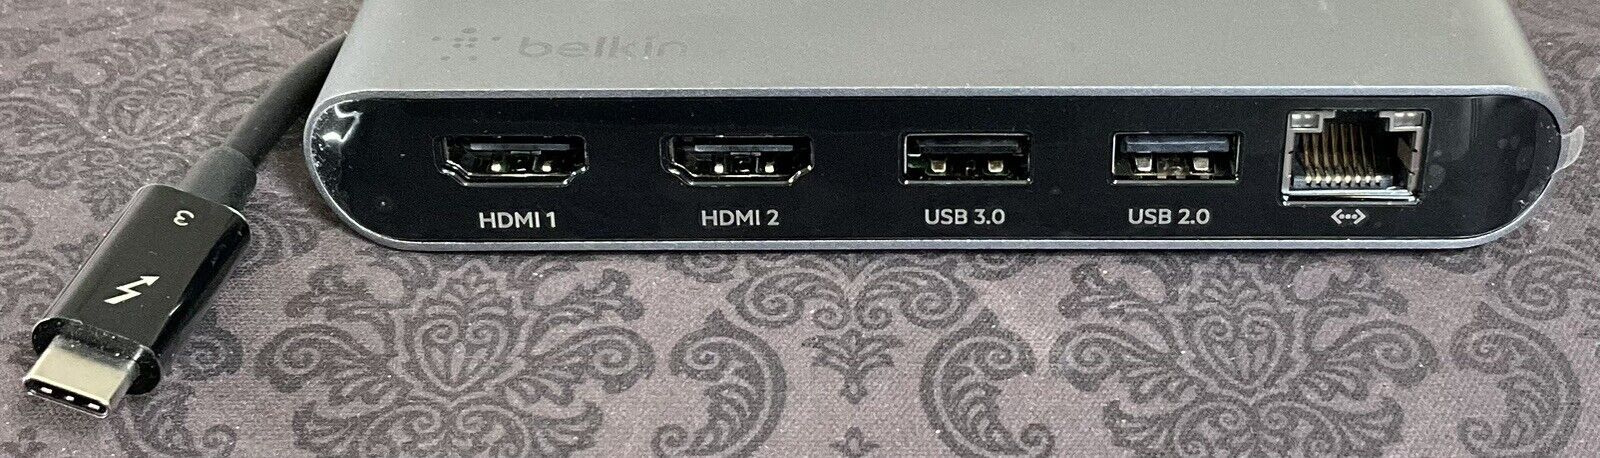 Belkin Thunderbolt 3 Mini Dock (w/Dual 4K HDMI)